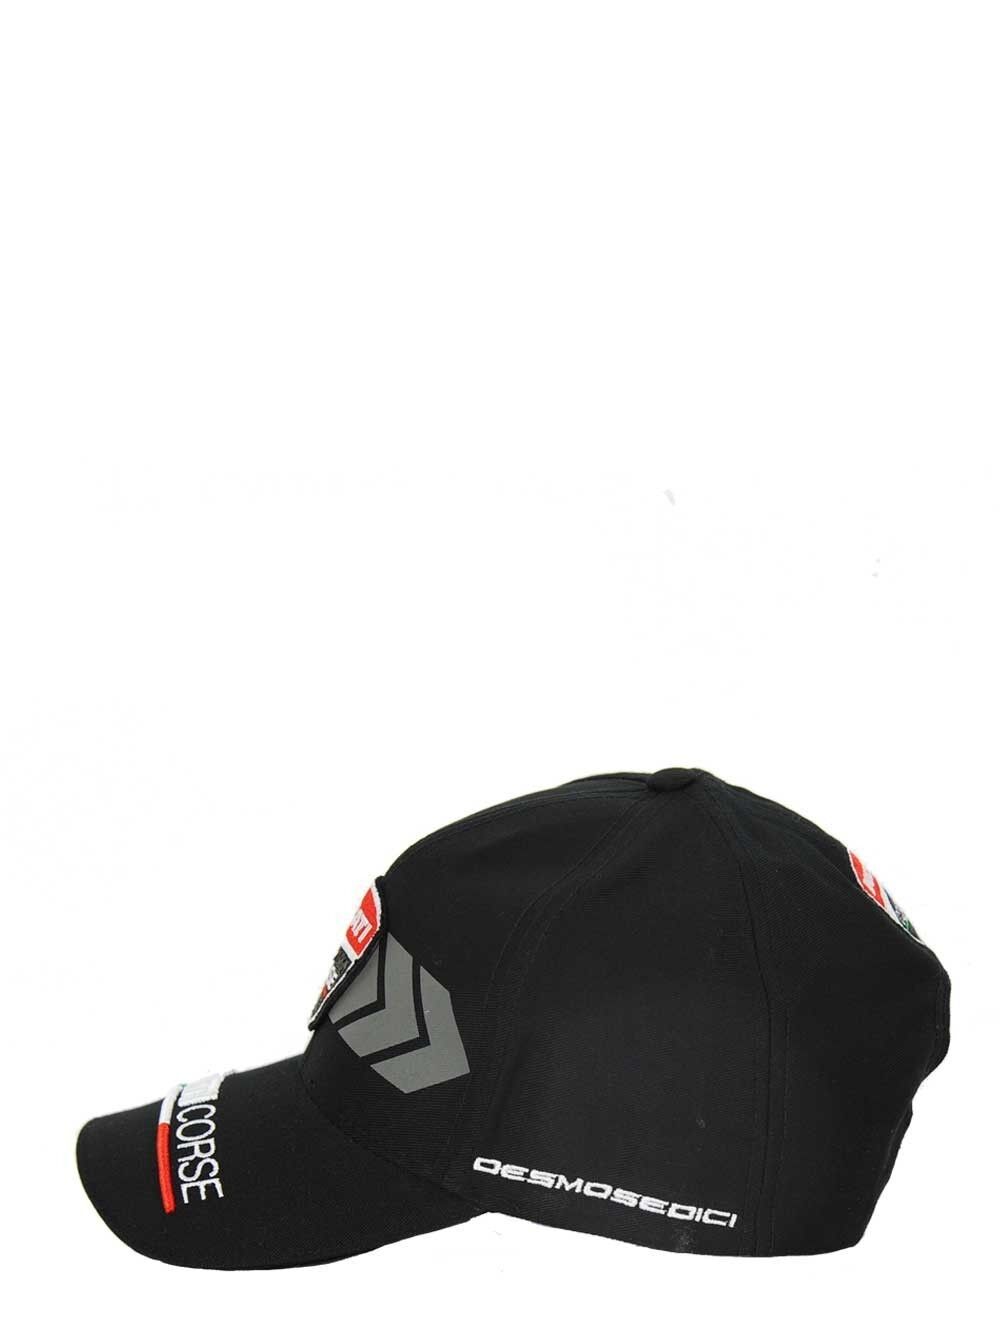 Official Ducati Arrow Baseball Cap - 16 46007